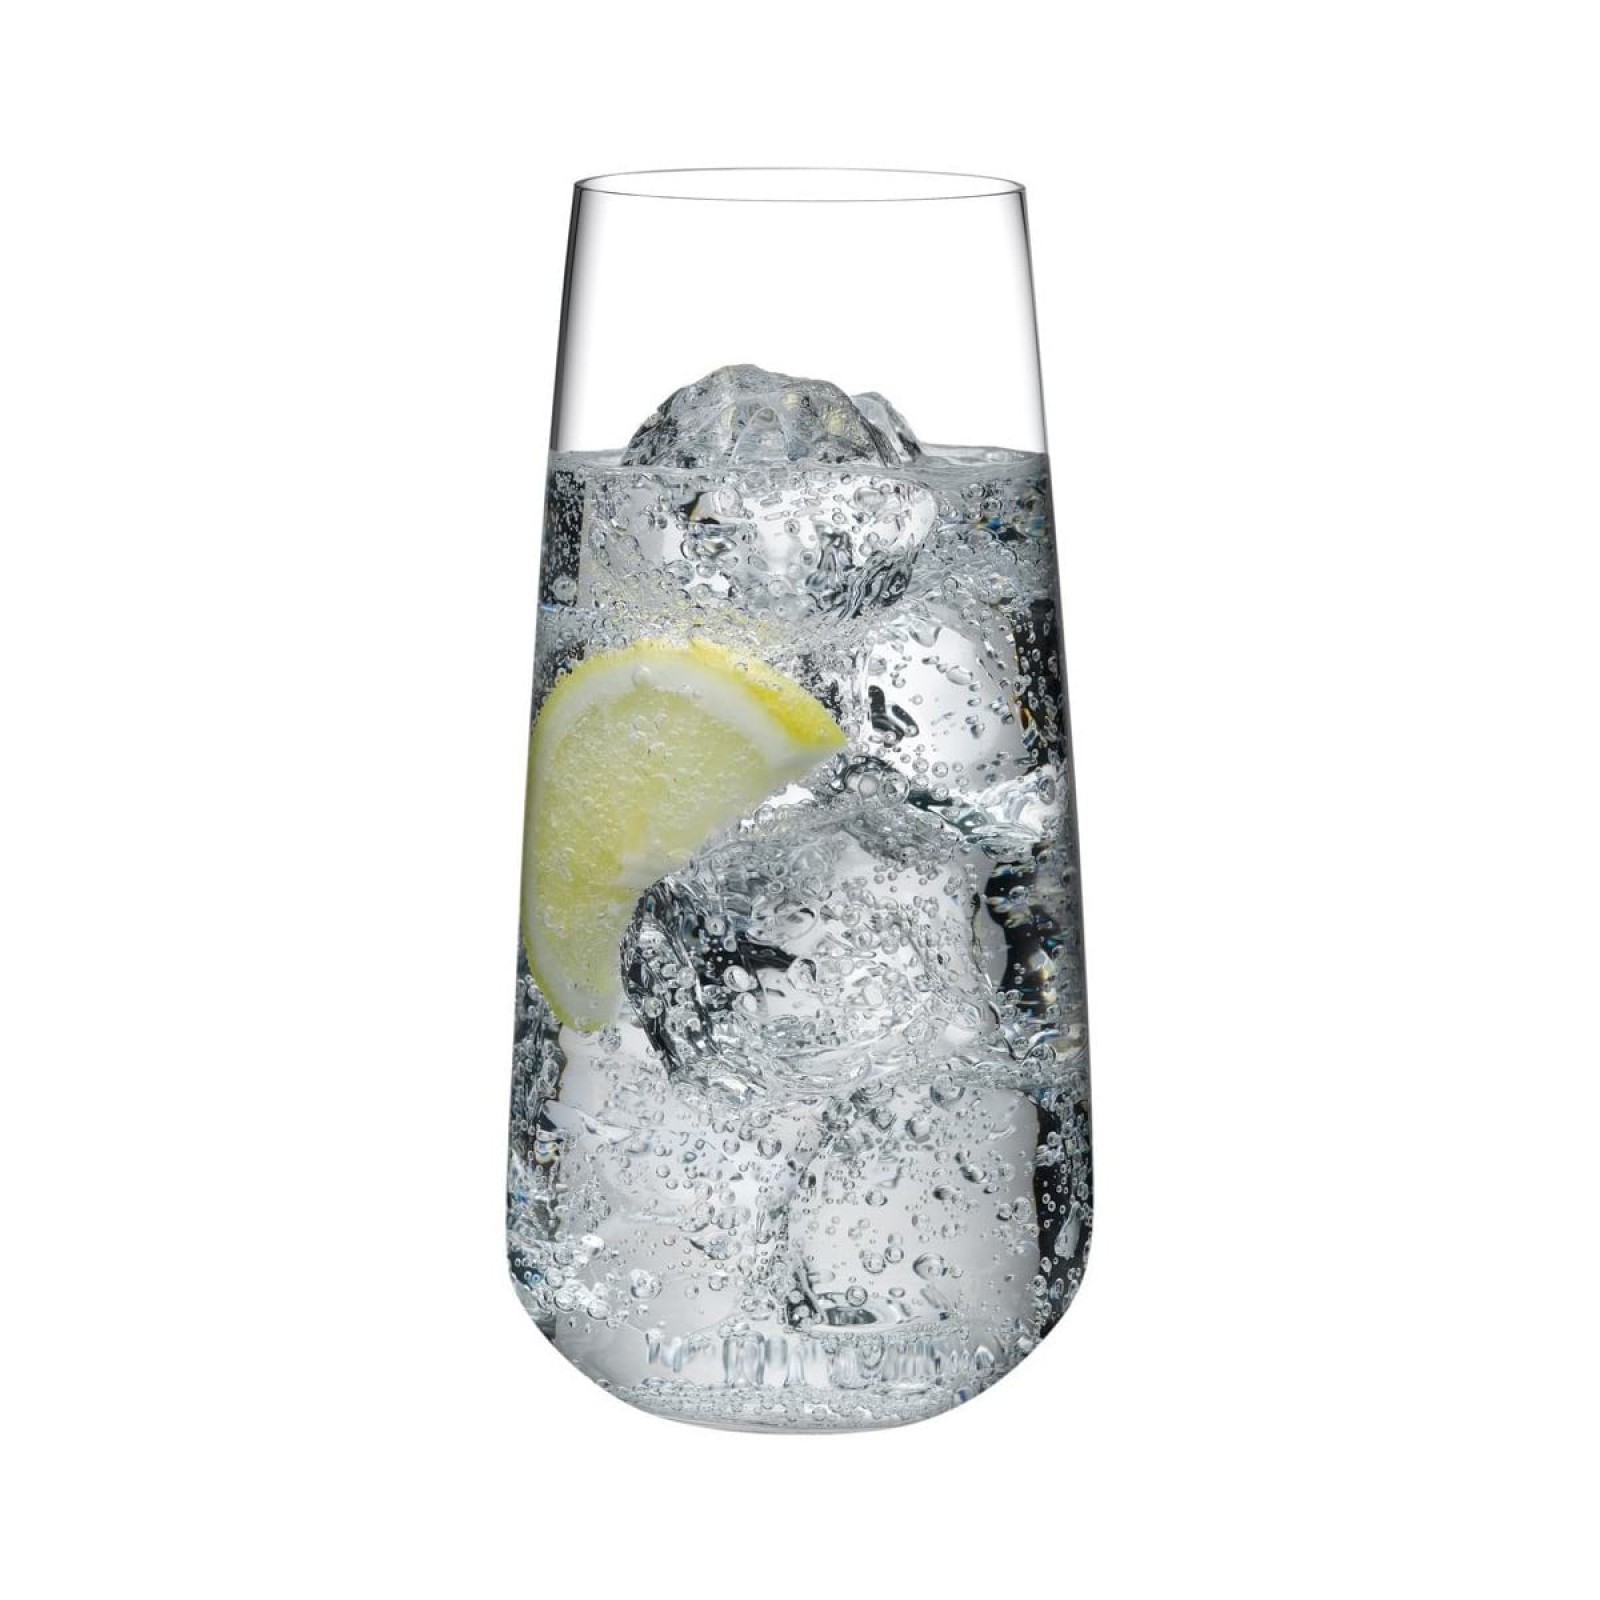 Ψηλά Ποτήρια Mirage 480 ml. (Σετ των 4) - Nude Glass